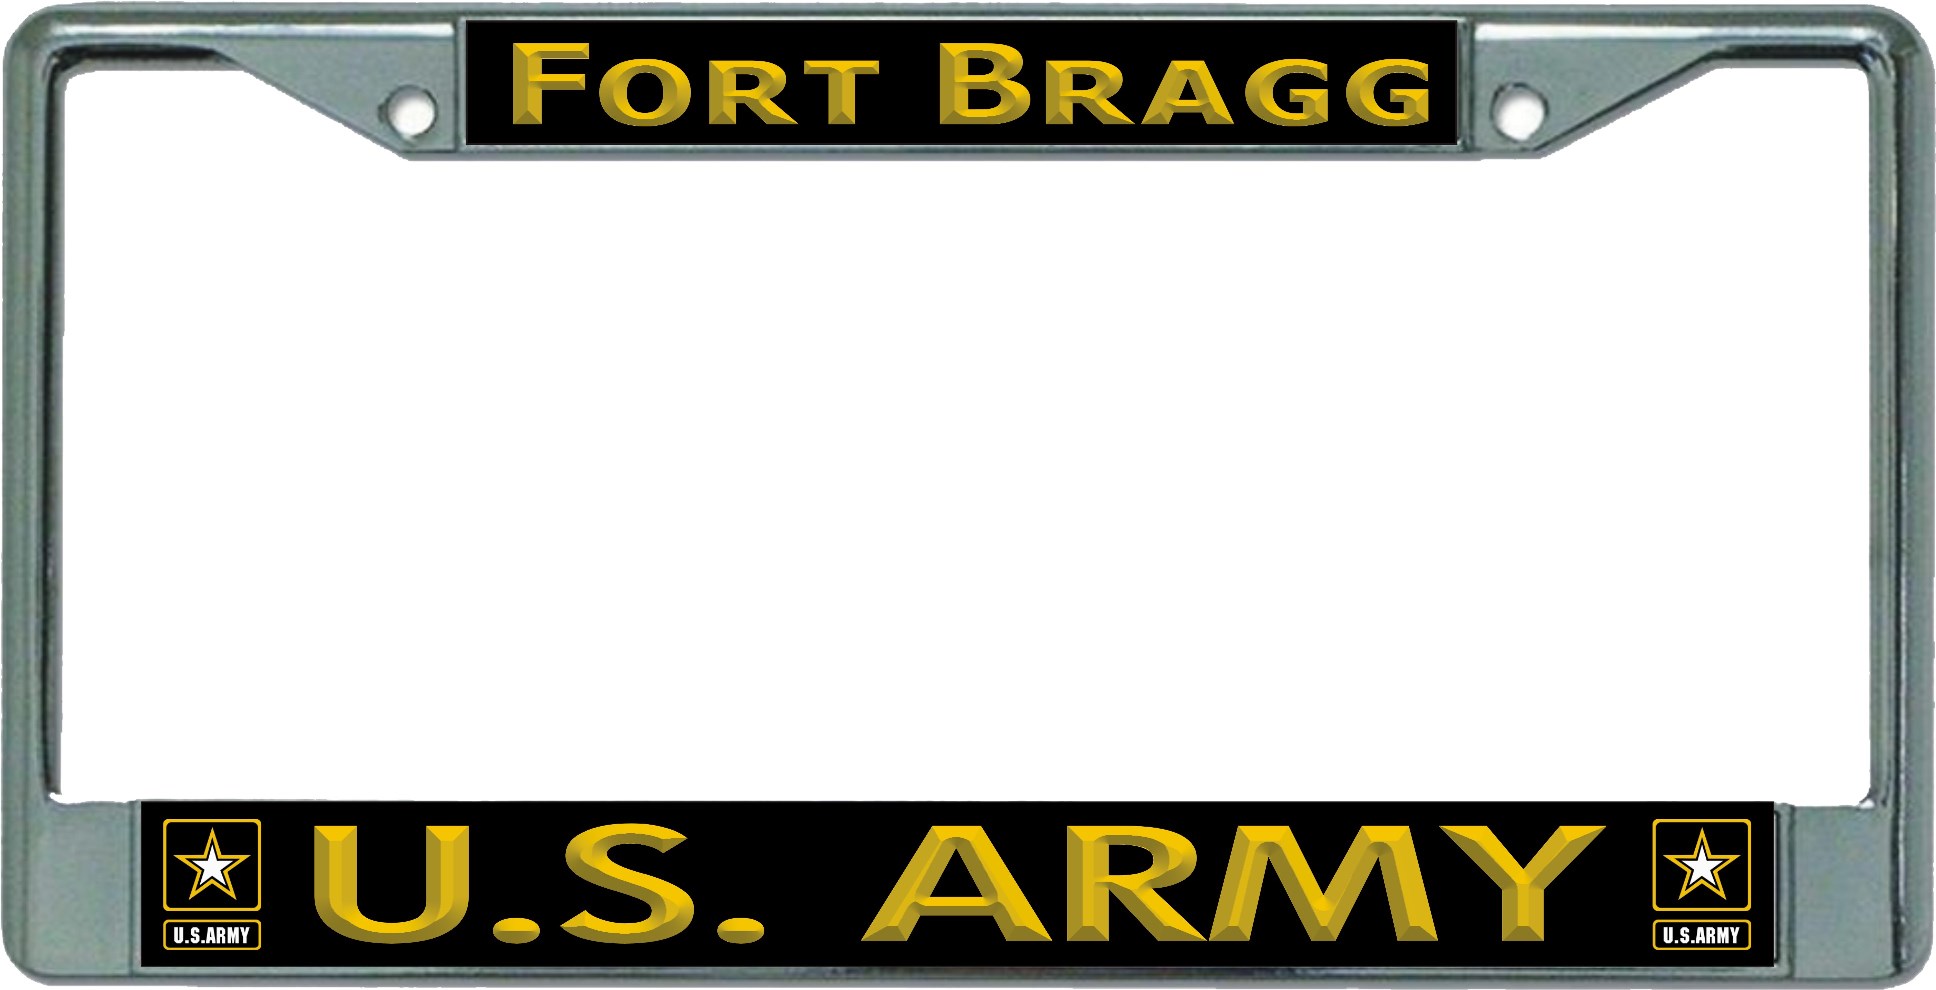 U.S. Army Fort Bragg Chrome LICENSE PLATE Frame